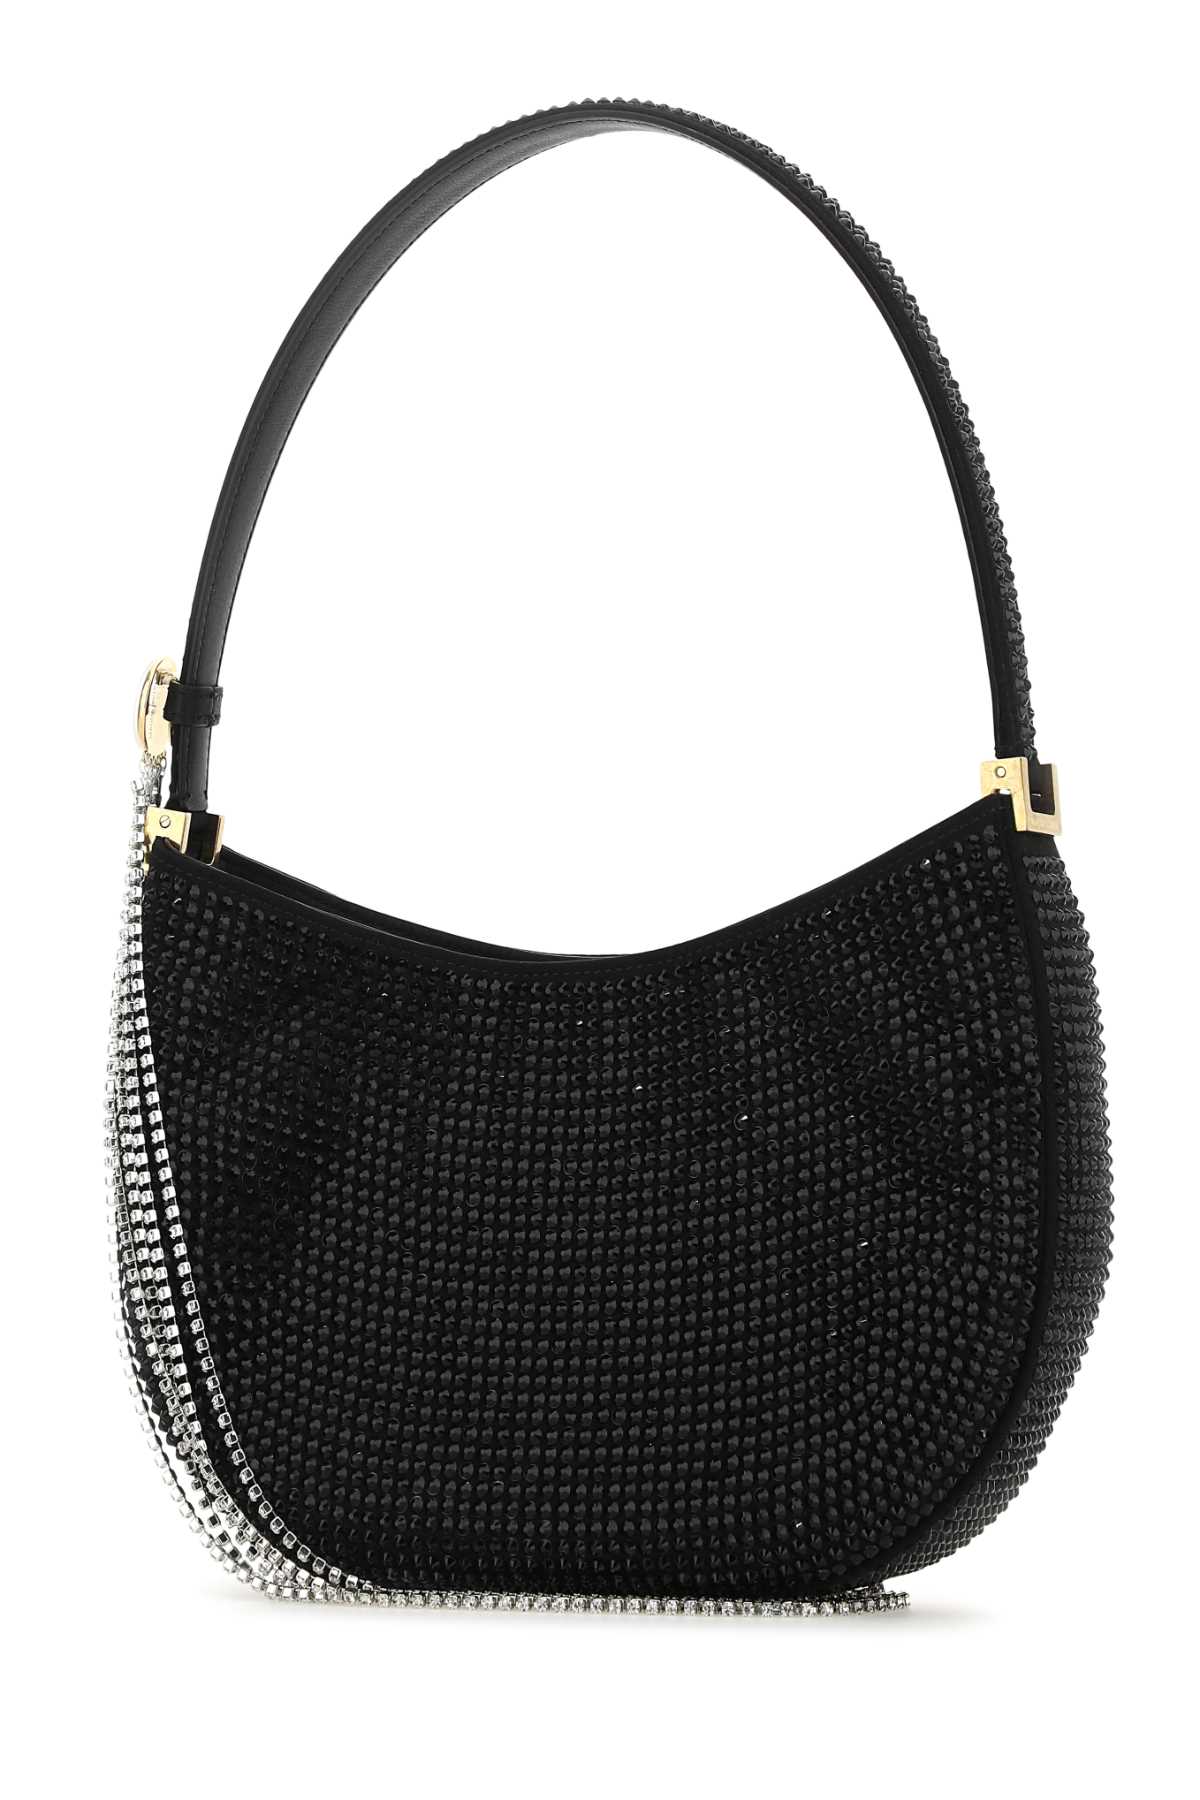 Magda Butrym Embellished Leather Vesna Handbag In Black